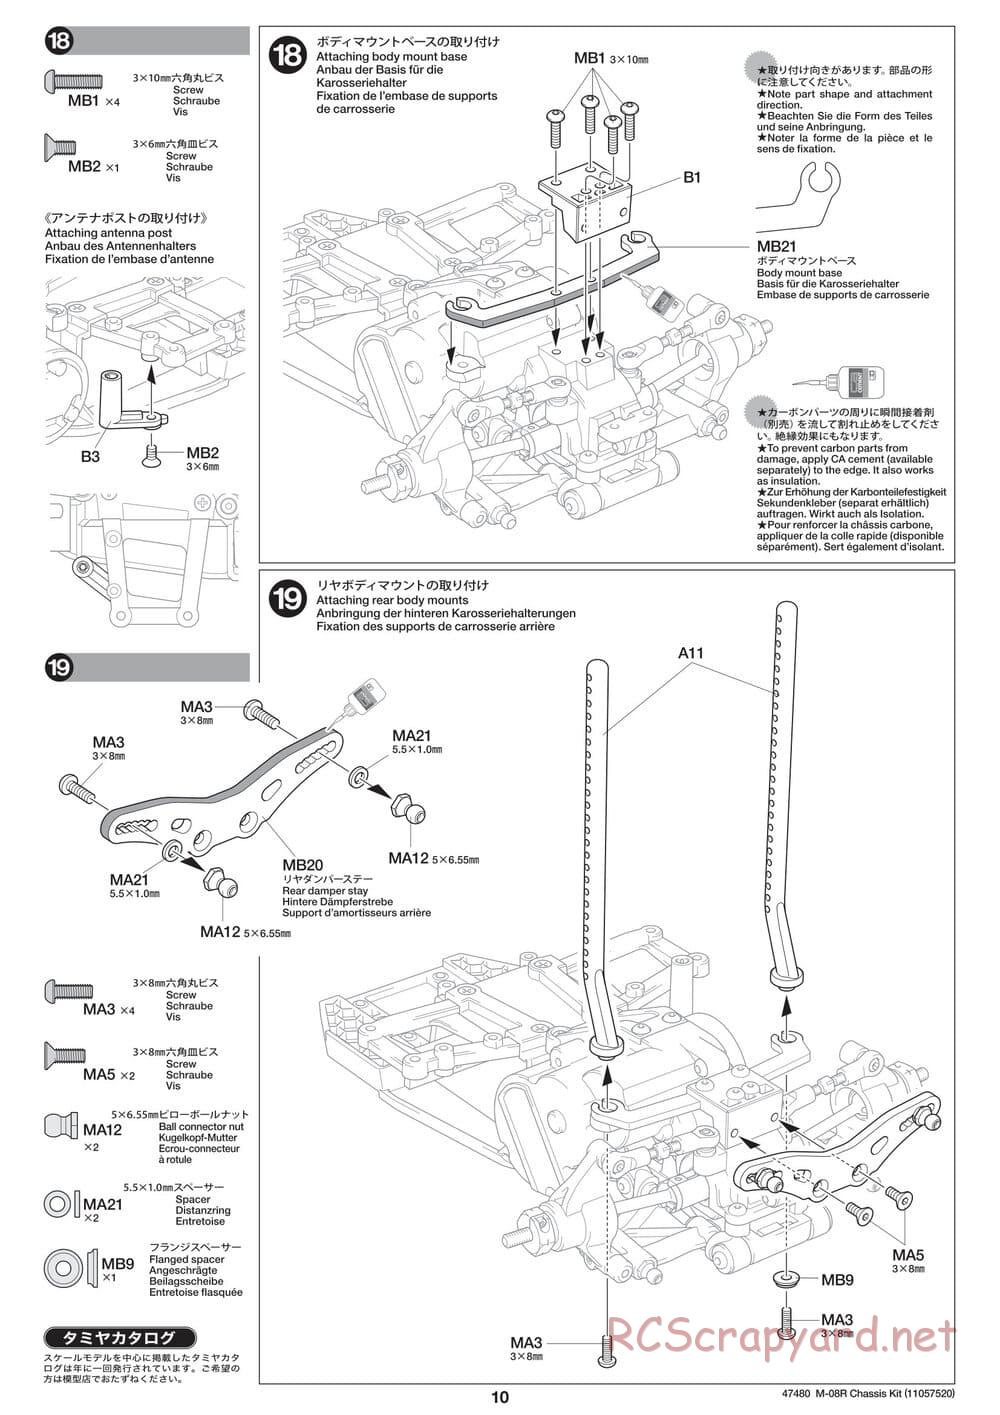 Tamiya - M-08R Chassis - Manual - Page 10